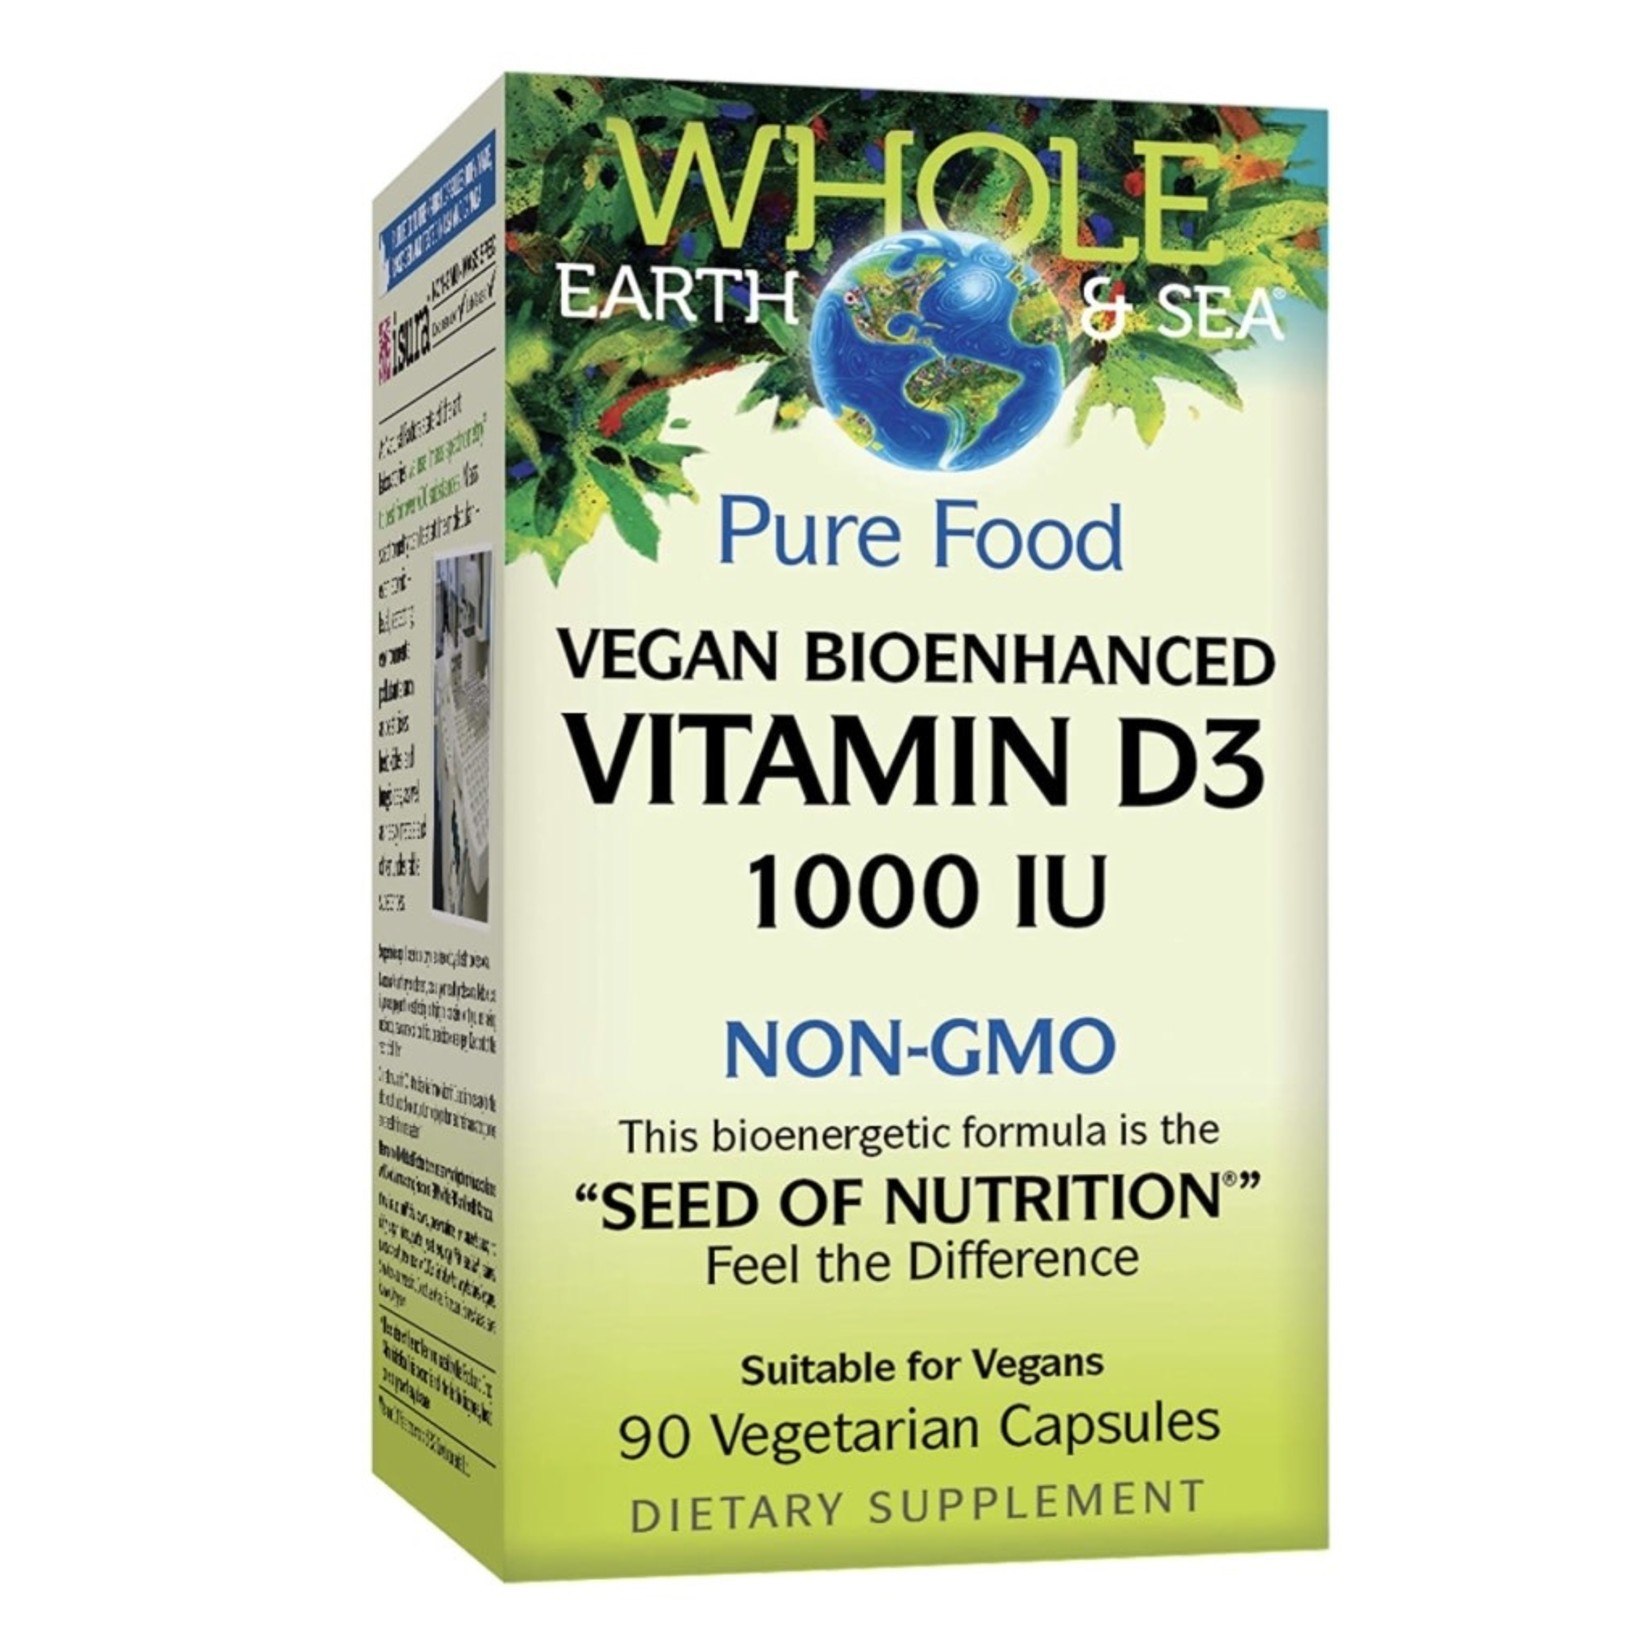 Whole Earth & Sea Whole Earth & Sea Vegan Bioenhanced Vitamin D3 1000IU 90 caps